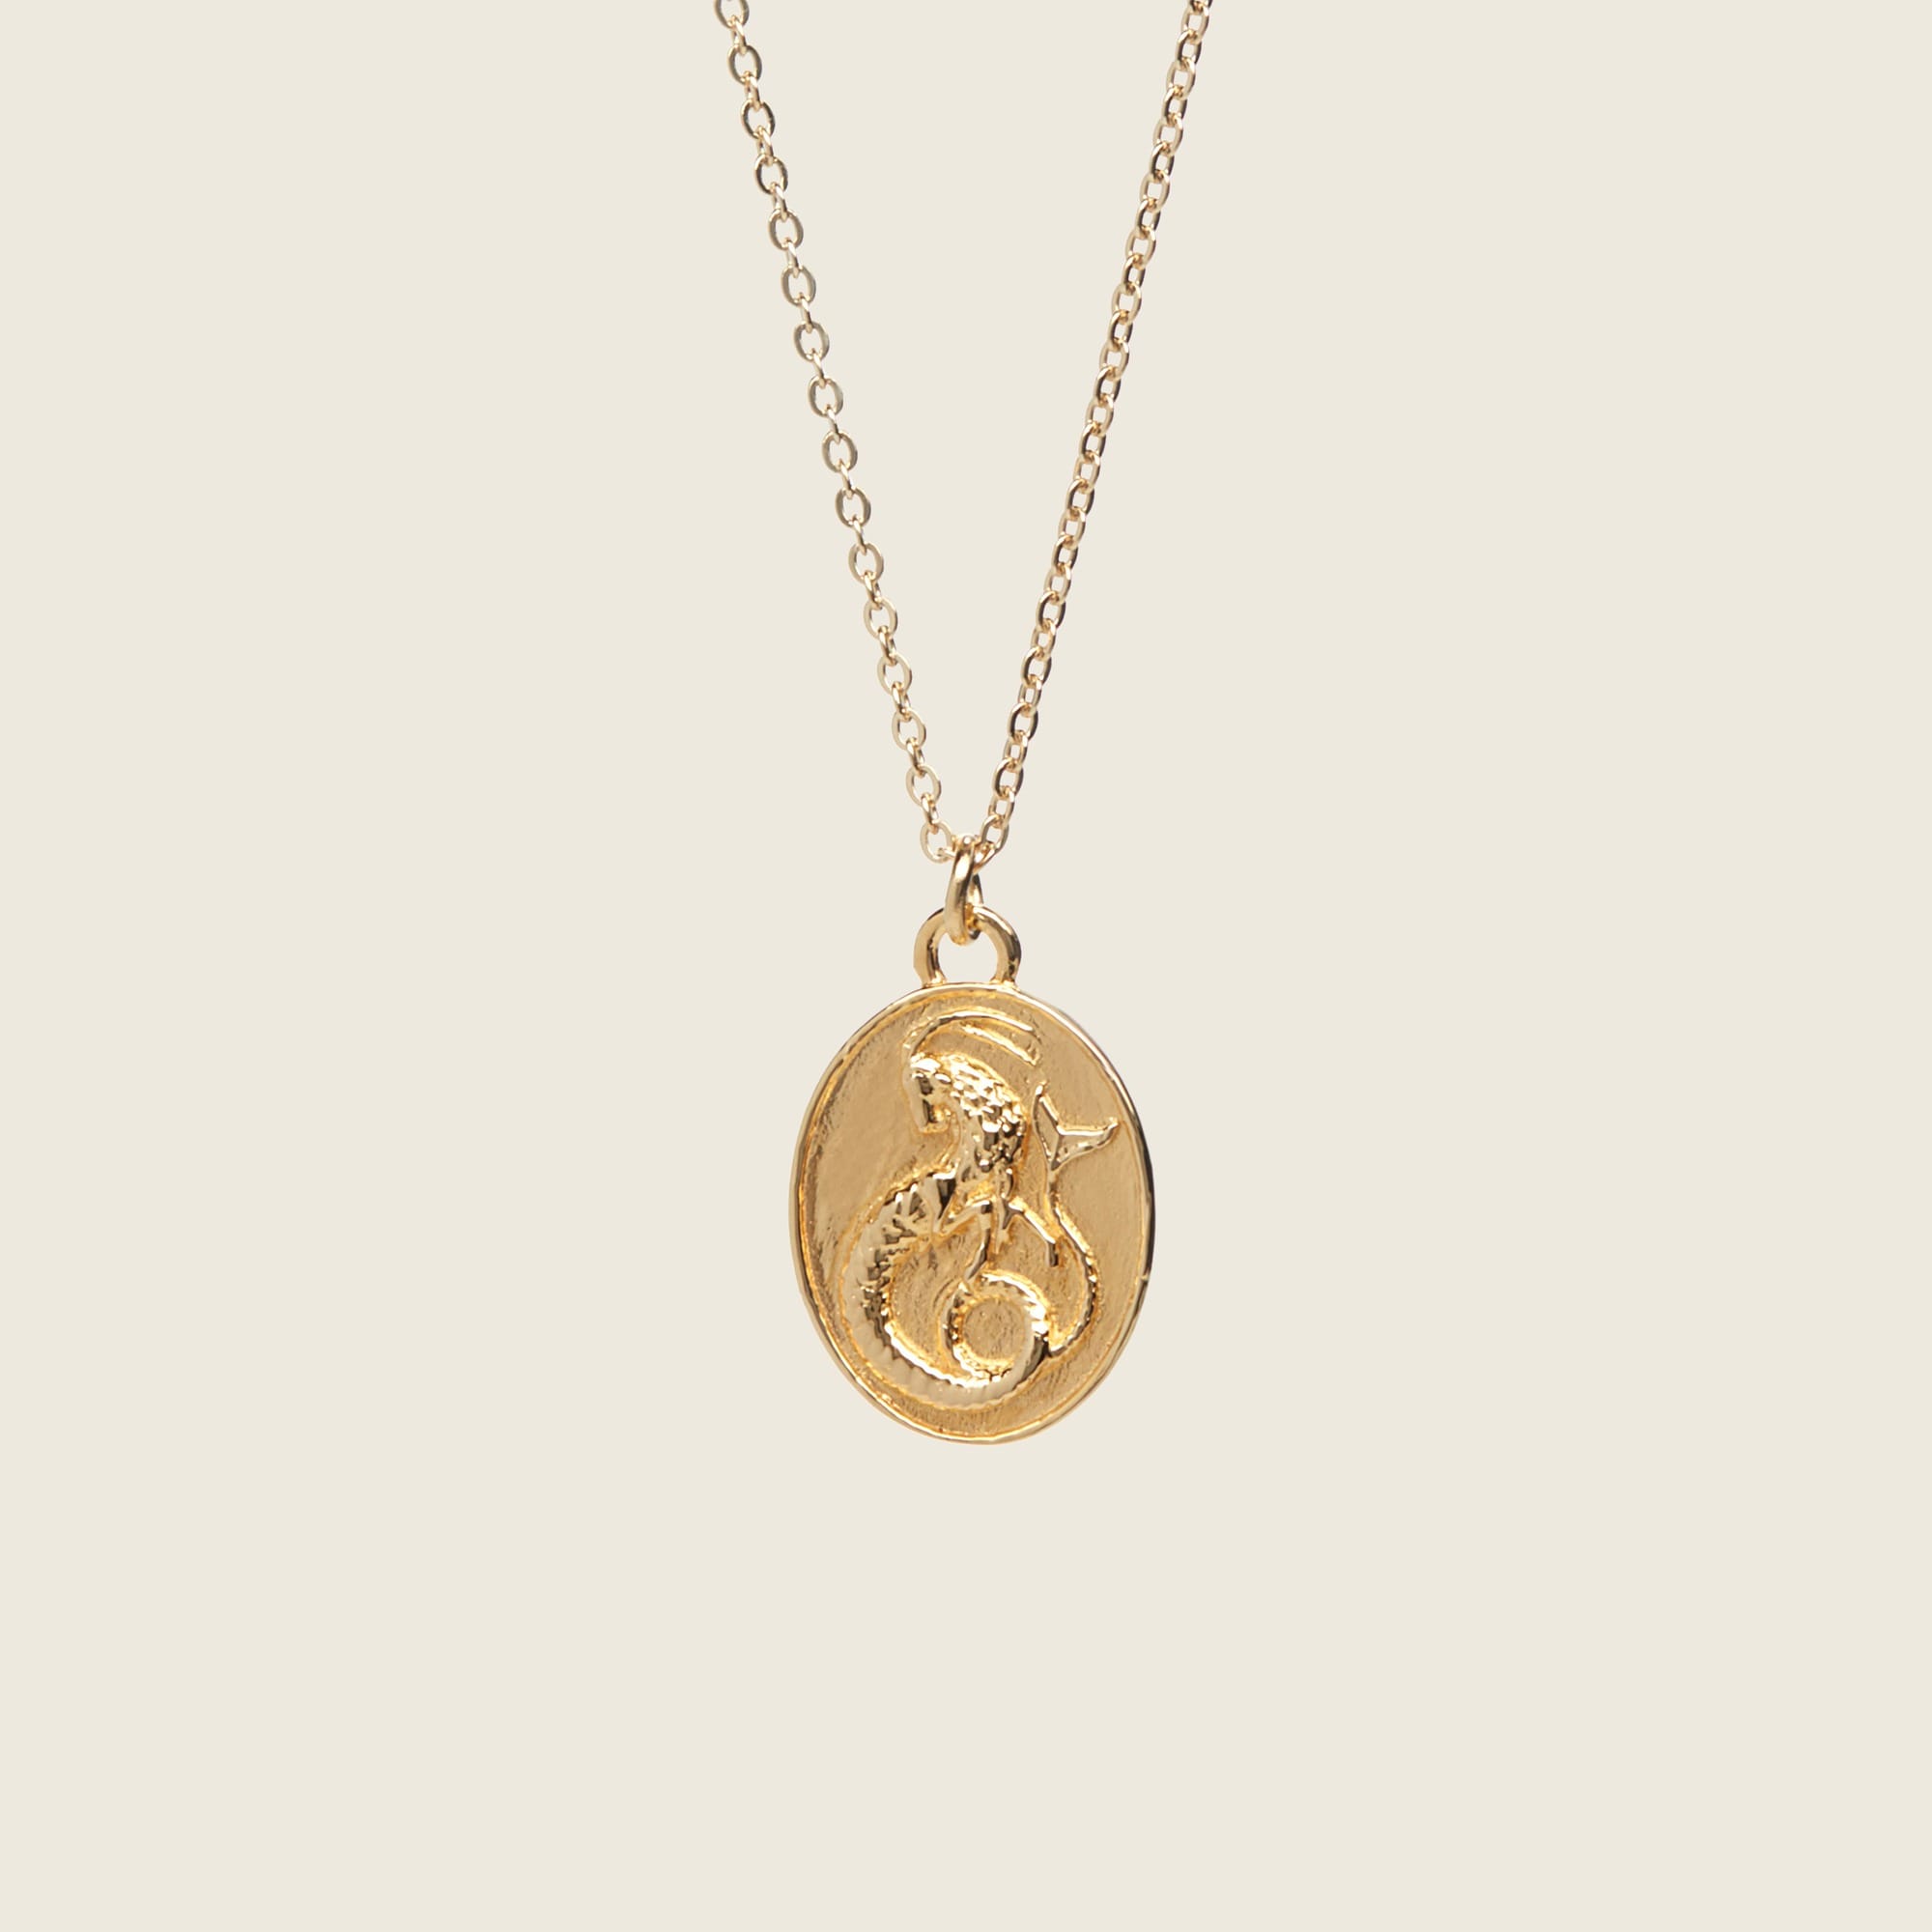 Jcrew TALON JEWELRY zodiac pendant necklace